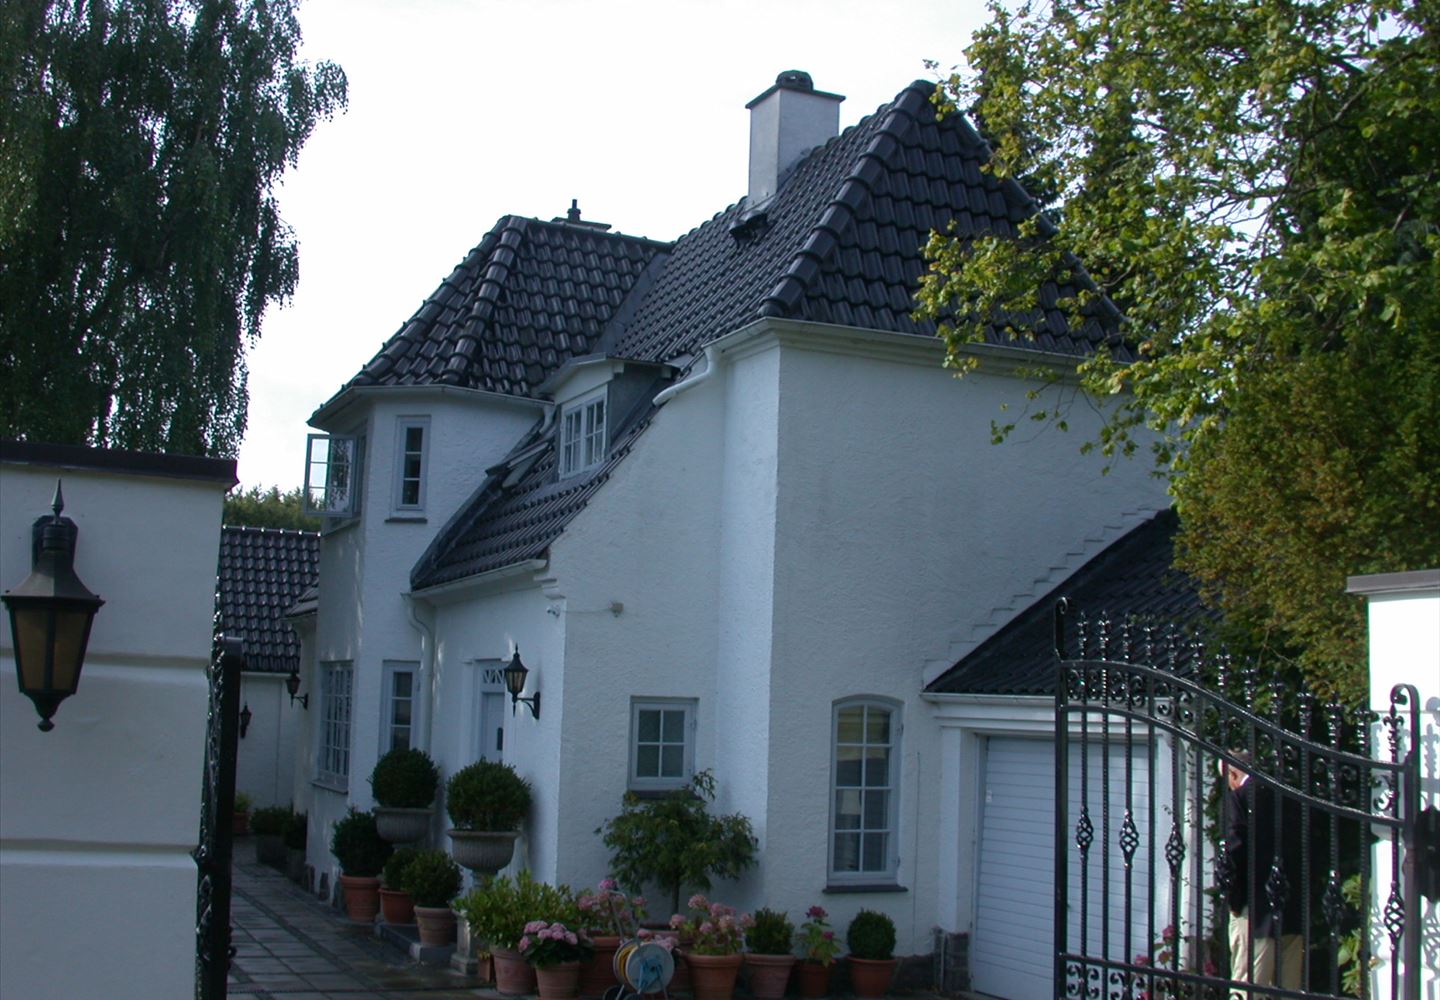 Gyvelvej 2, 2942 Skodsborg